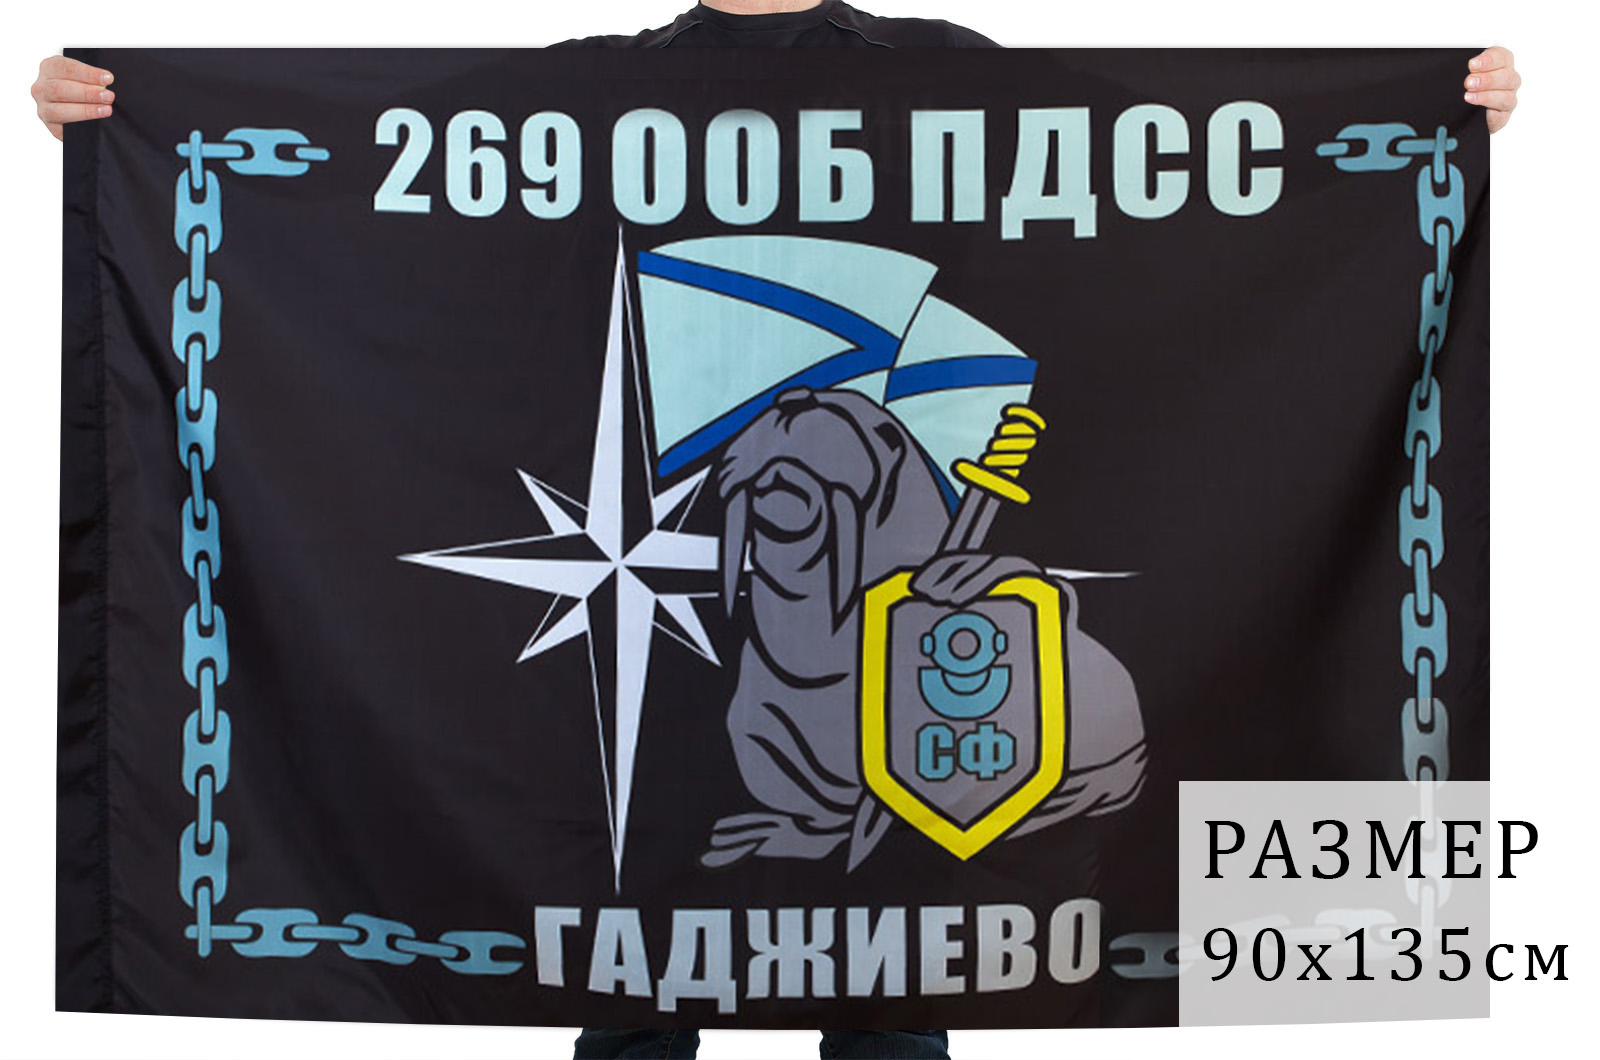 Флаг 269 ООБ ПДСС Северный флот